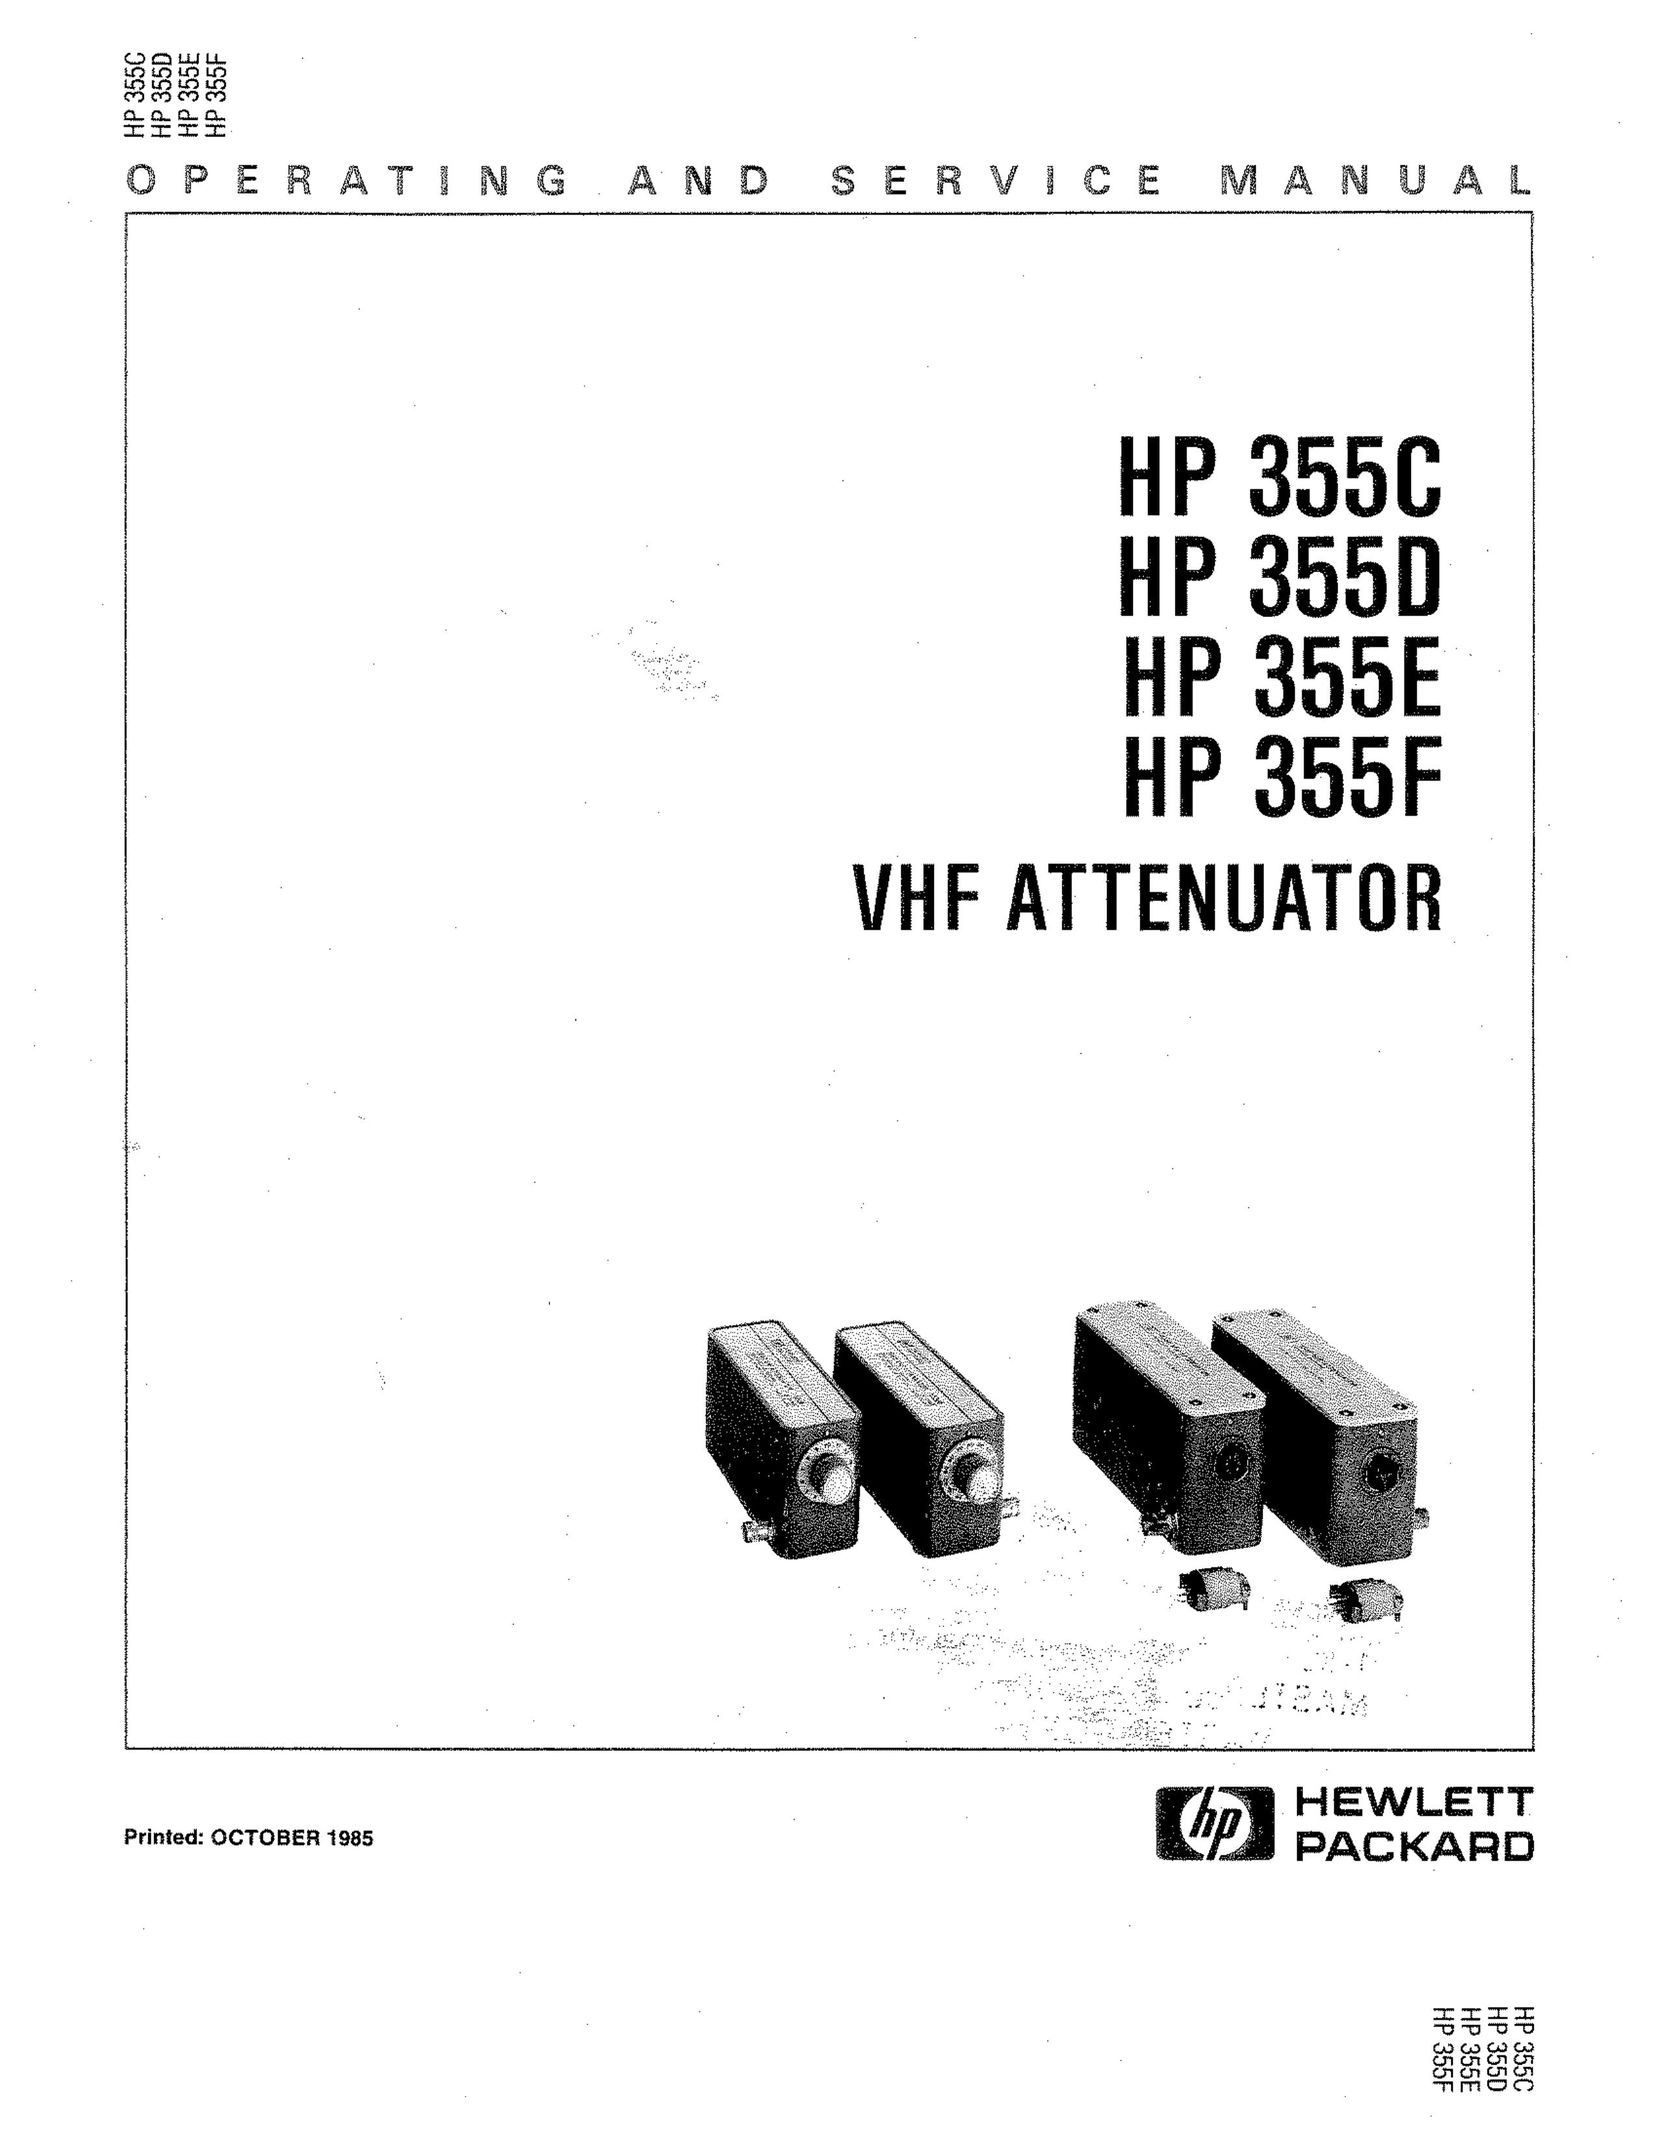 HP (Hewlett-Packard) HP 3550 TV Antenna User Manual